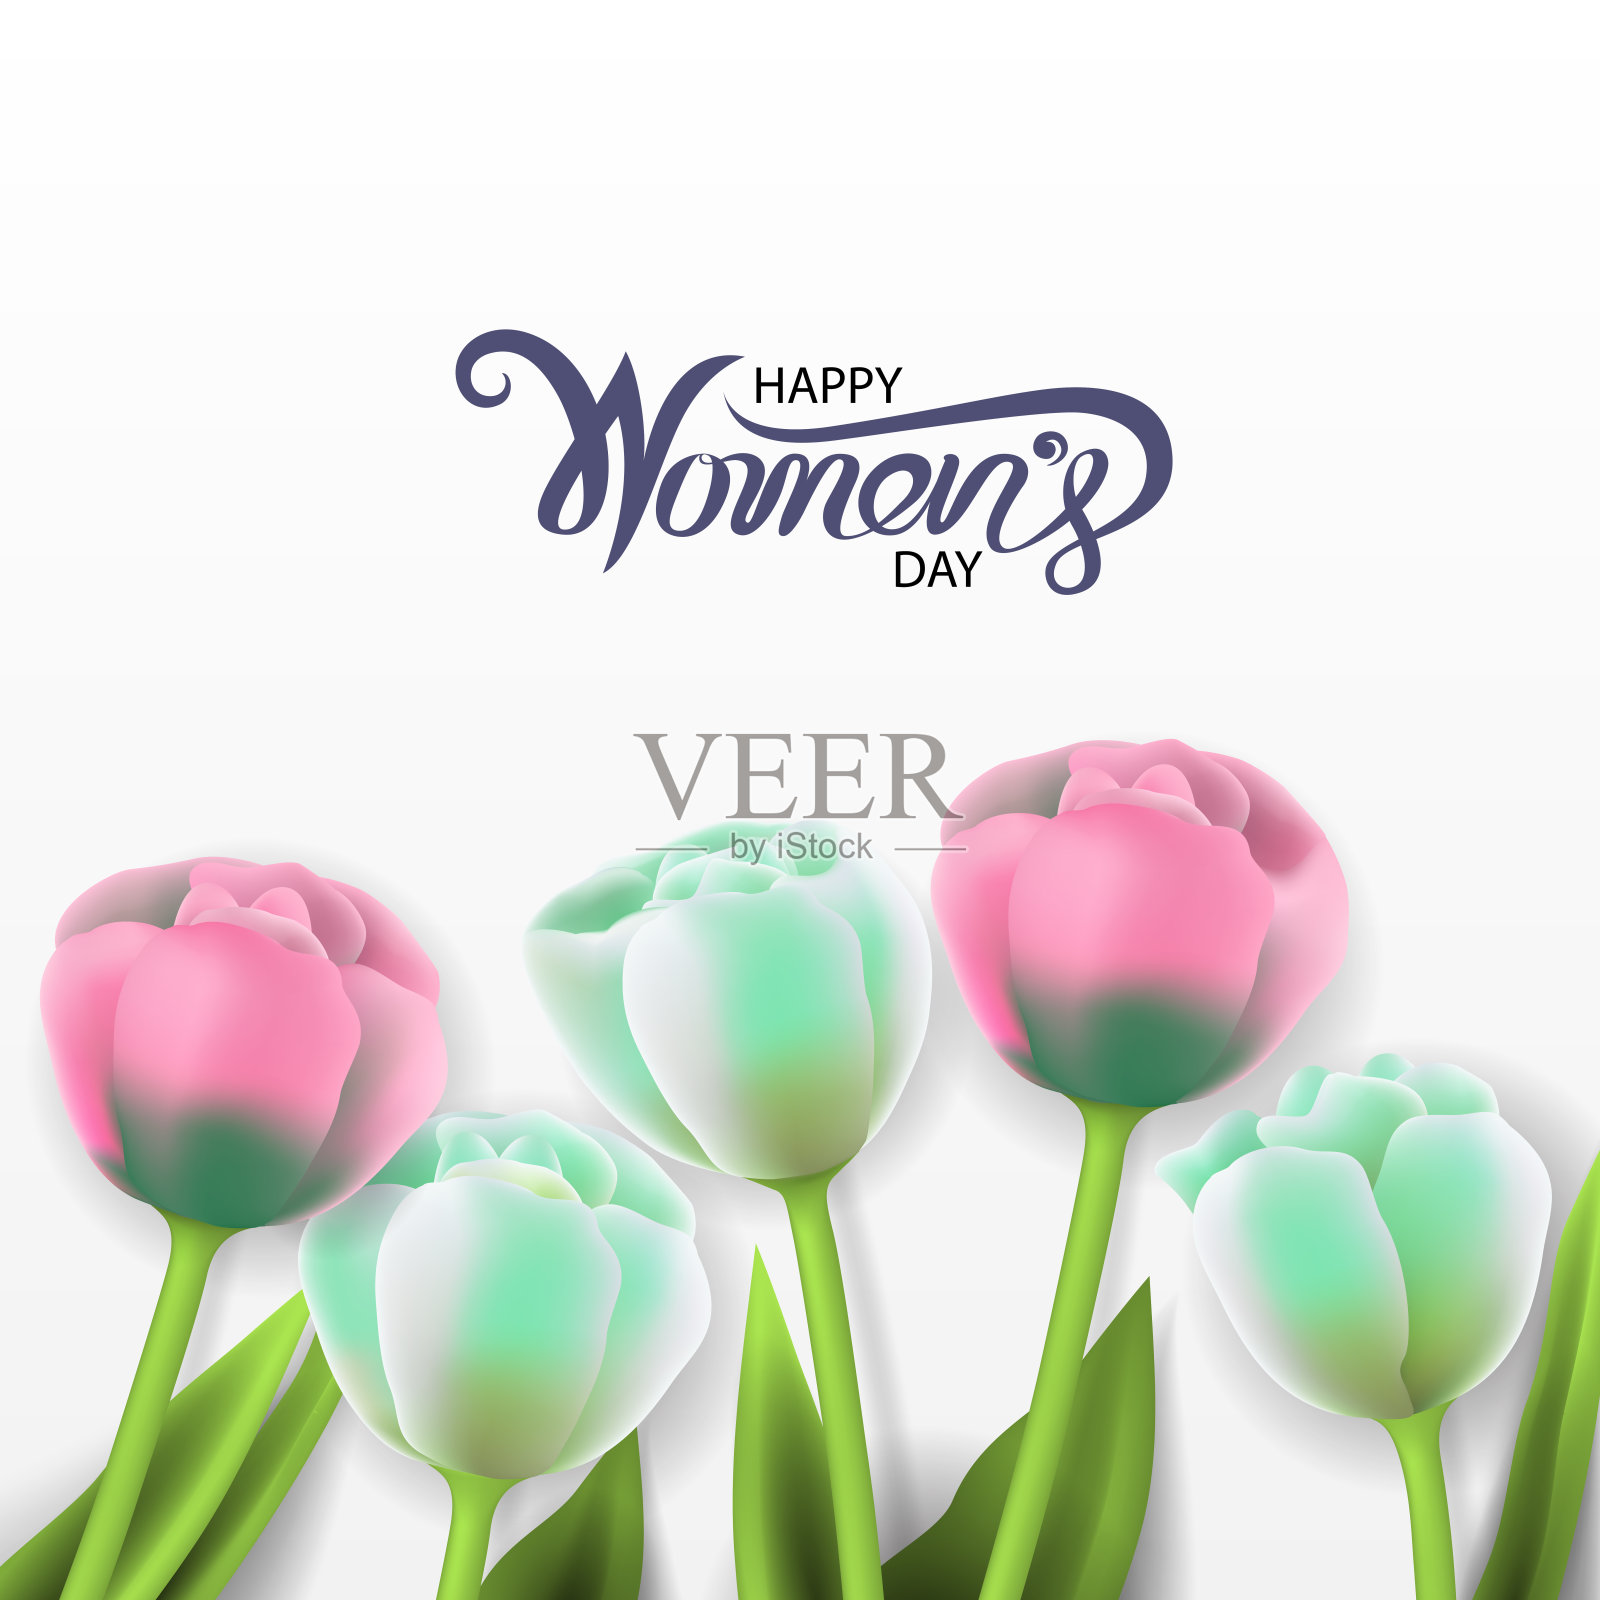 国际妇女节快乐与鲜花贺卡。背景上是粉红色和白色的郁金香。妇女节用鲜花来装饰。矢量图插画图片素材